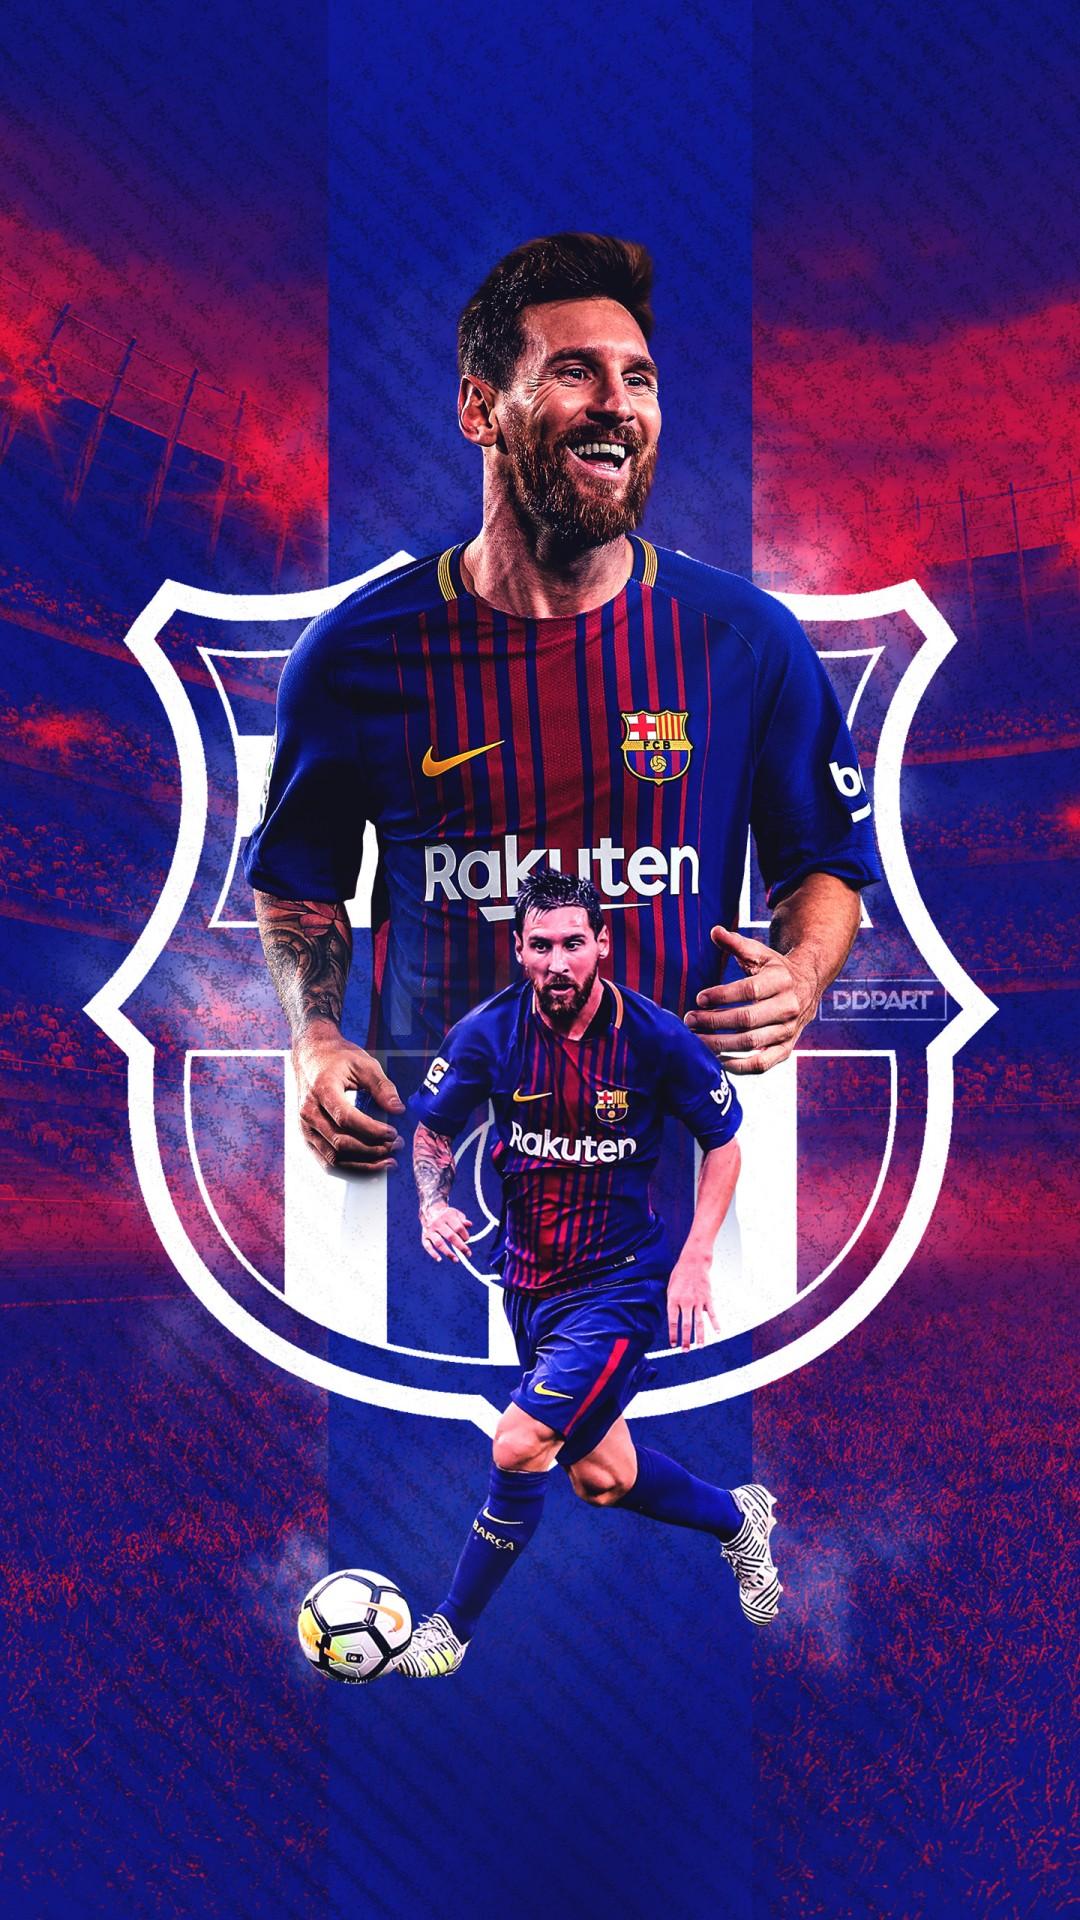 Hãy trải nghiệm chất lượng hình ảnh đỉnh cao với Messi 4k Wallpaper cho Iphone. Tỏa sáng trên màn hình của bạn với hình ảnh chân dung ngôi sao bóng đá hàng đầu thế giới.